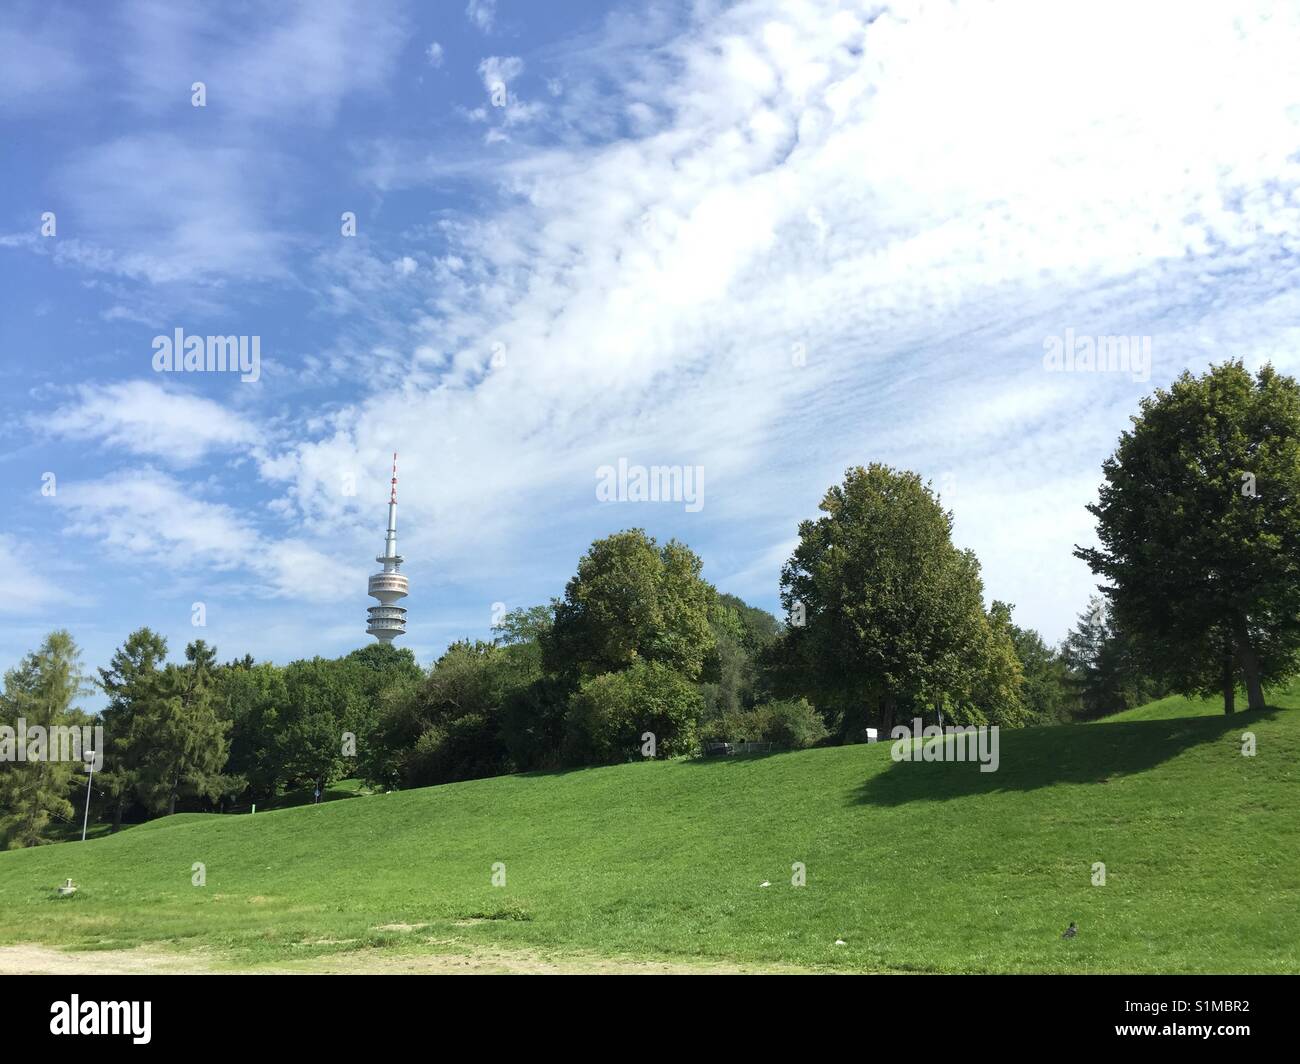 Olympiaturm München Bayern im Simmer bei blauem Himmel und grüner Vegetation Stock Photo